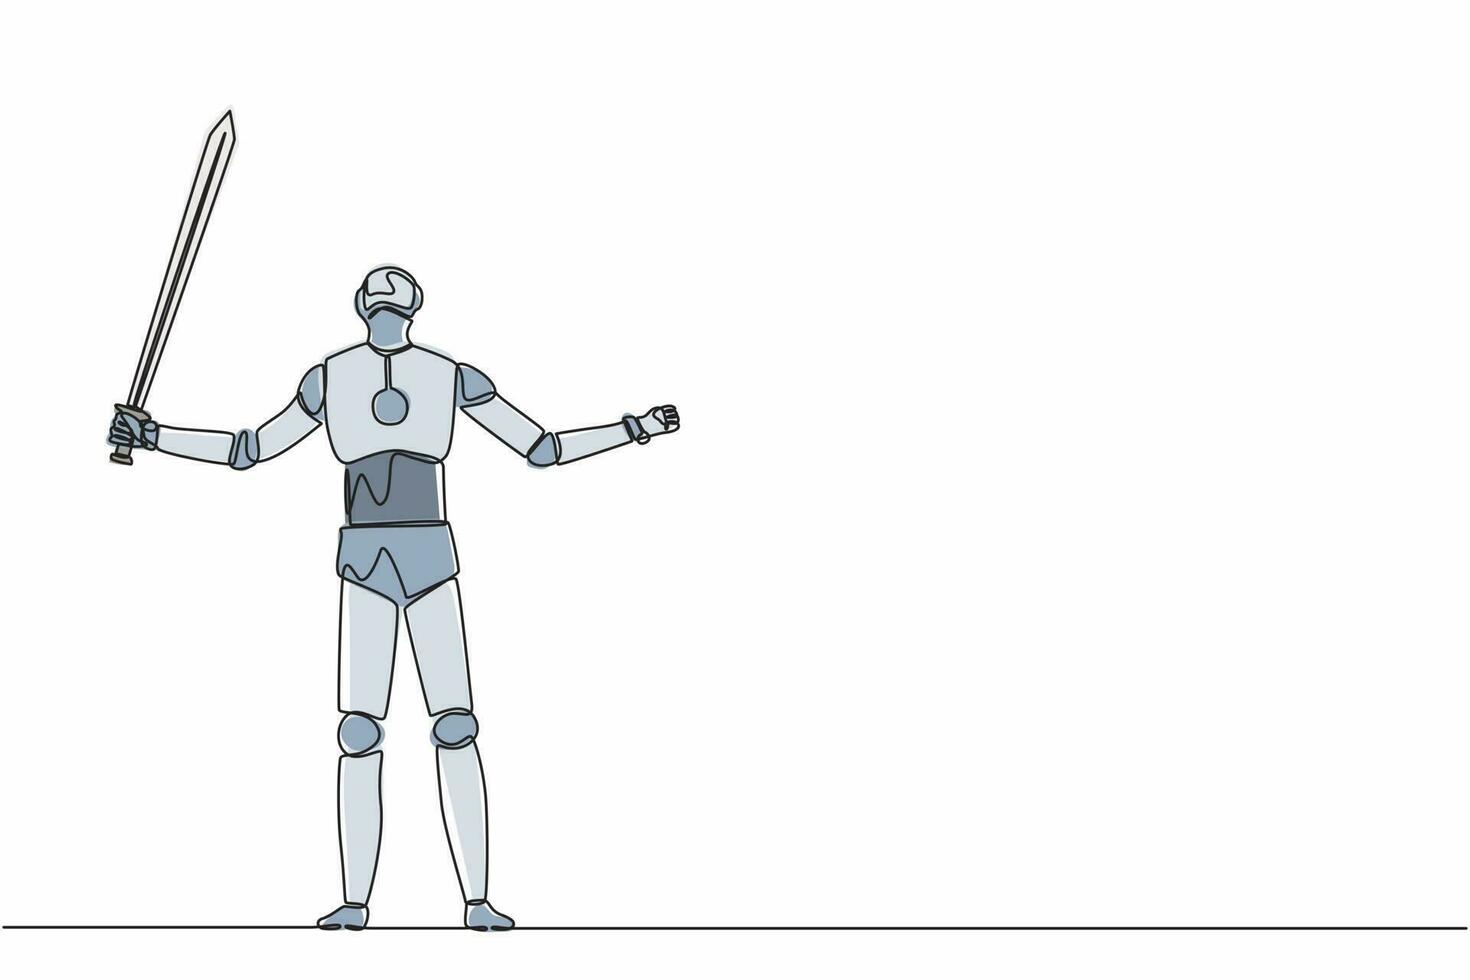 kontinuerliga en rad ritningsrobotar som står och lyfter upp stort svärd. humanoid robot cybernetisk organism. framtida robotutvecklingskoncept. enda rad rita design vektorgrafisk illustration vektor